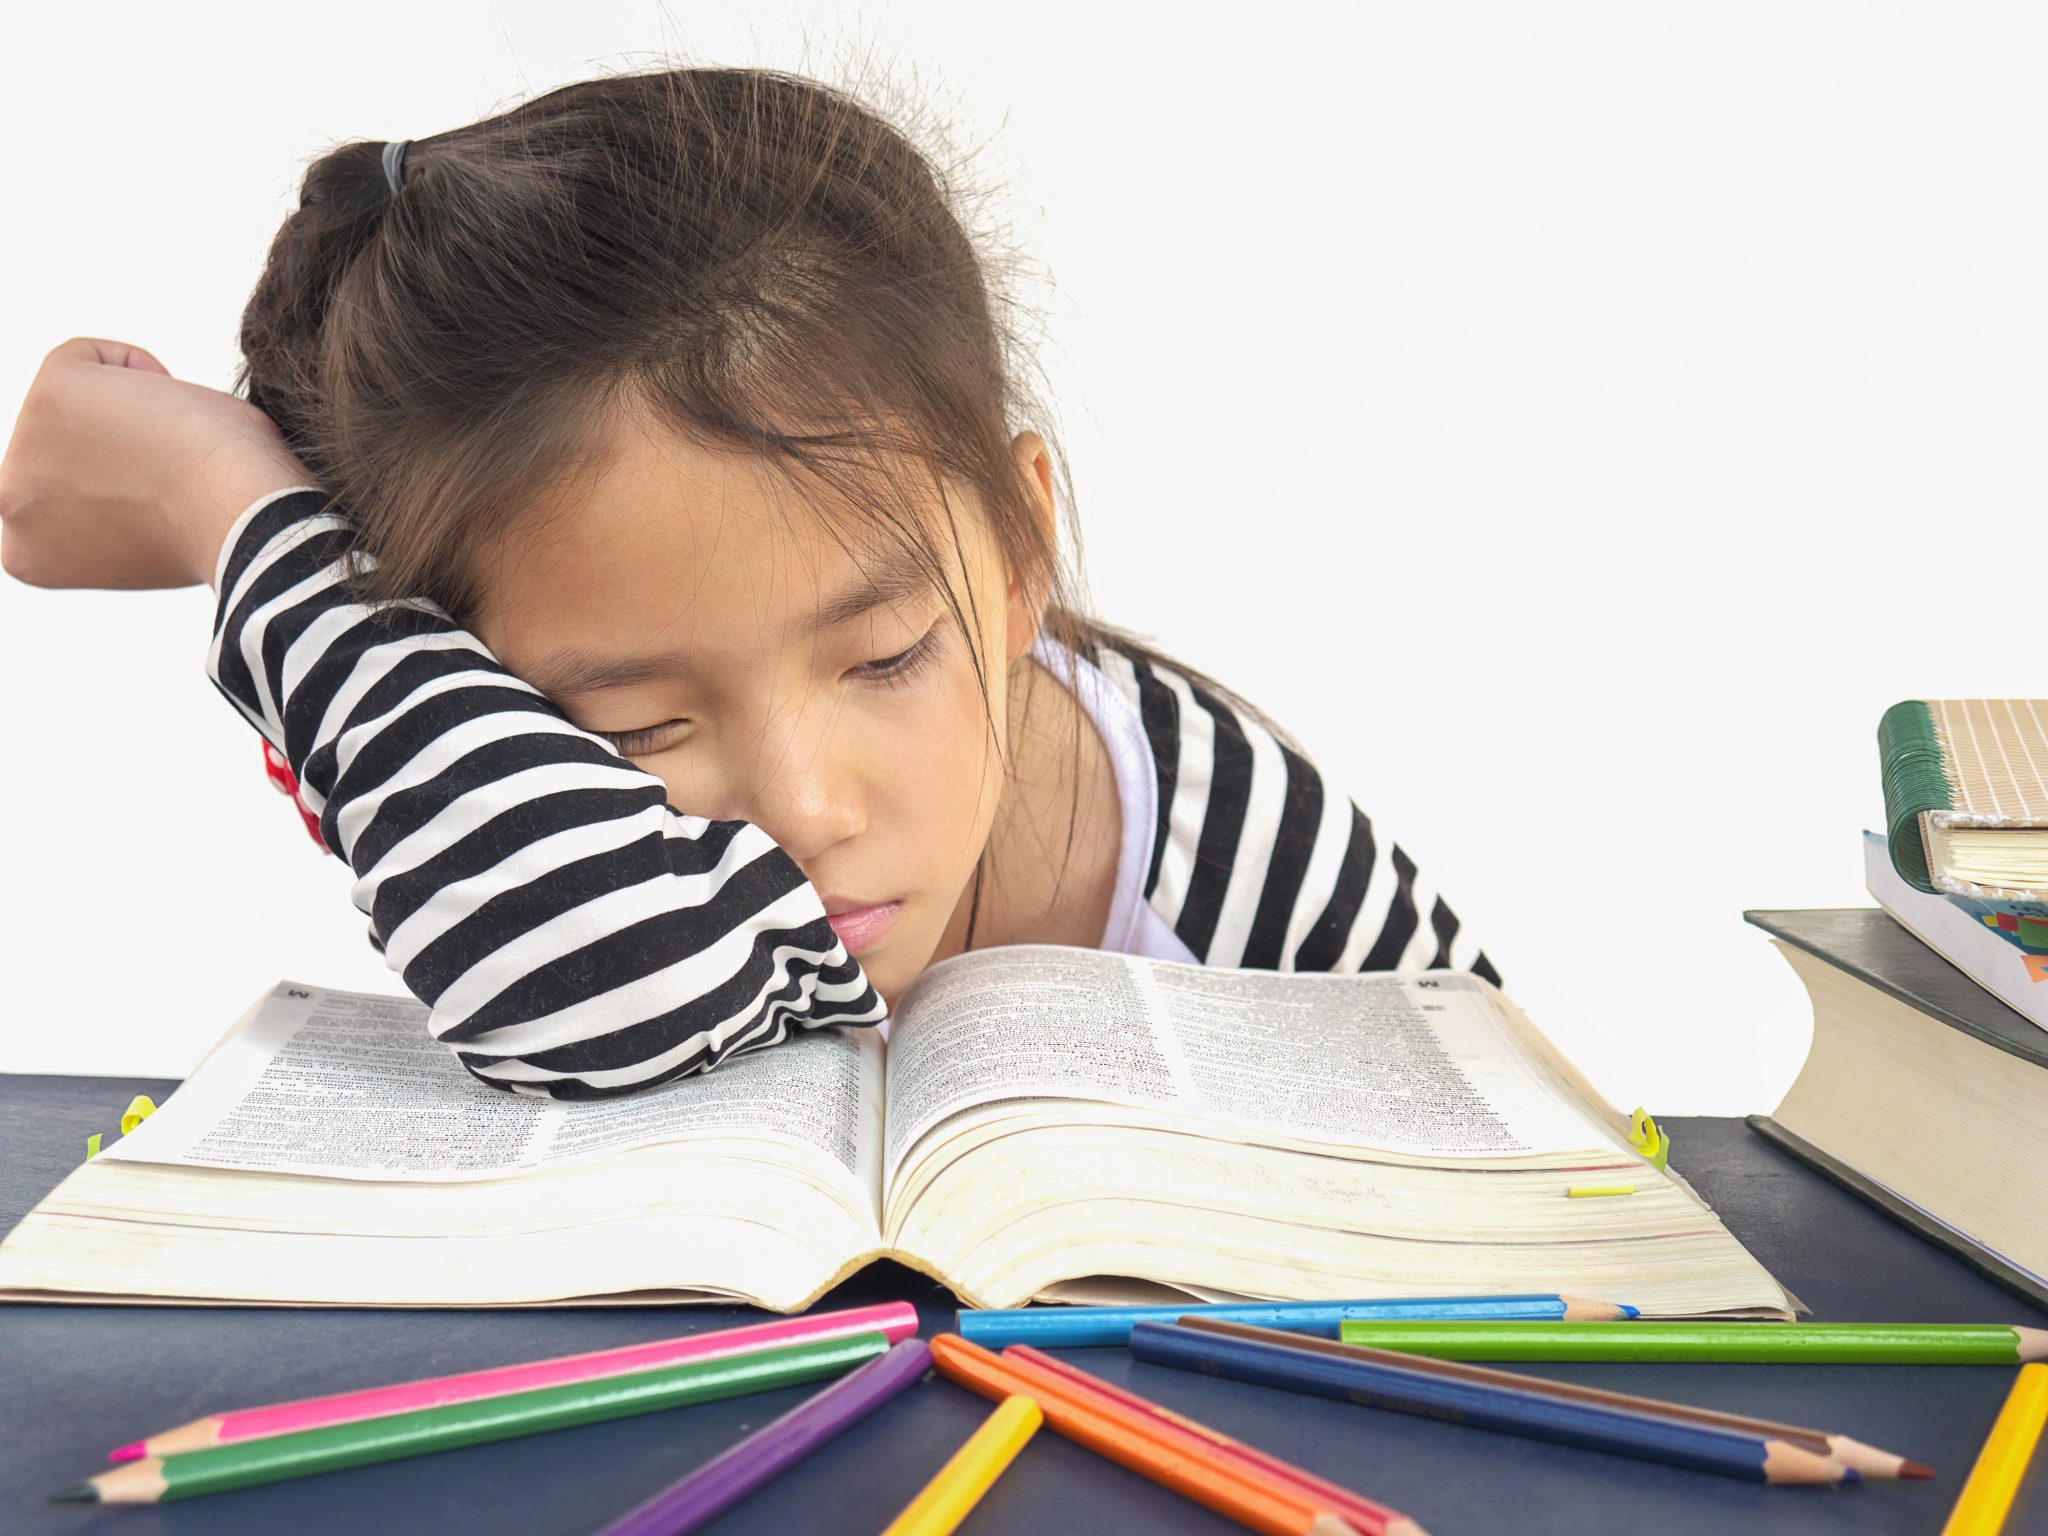 The most difficult subject. Азиатские дети учатся. Усталый ребенок картинки. Ребенок устал читать. Фото детей азиатов в школе с книгой.